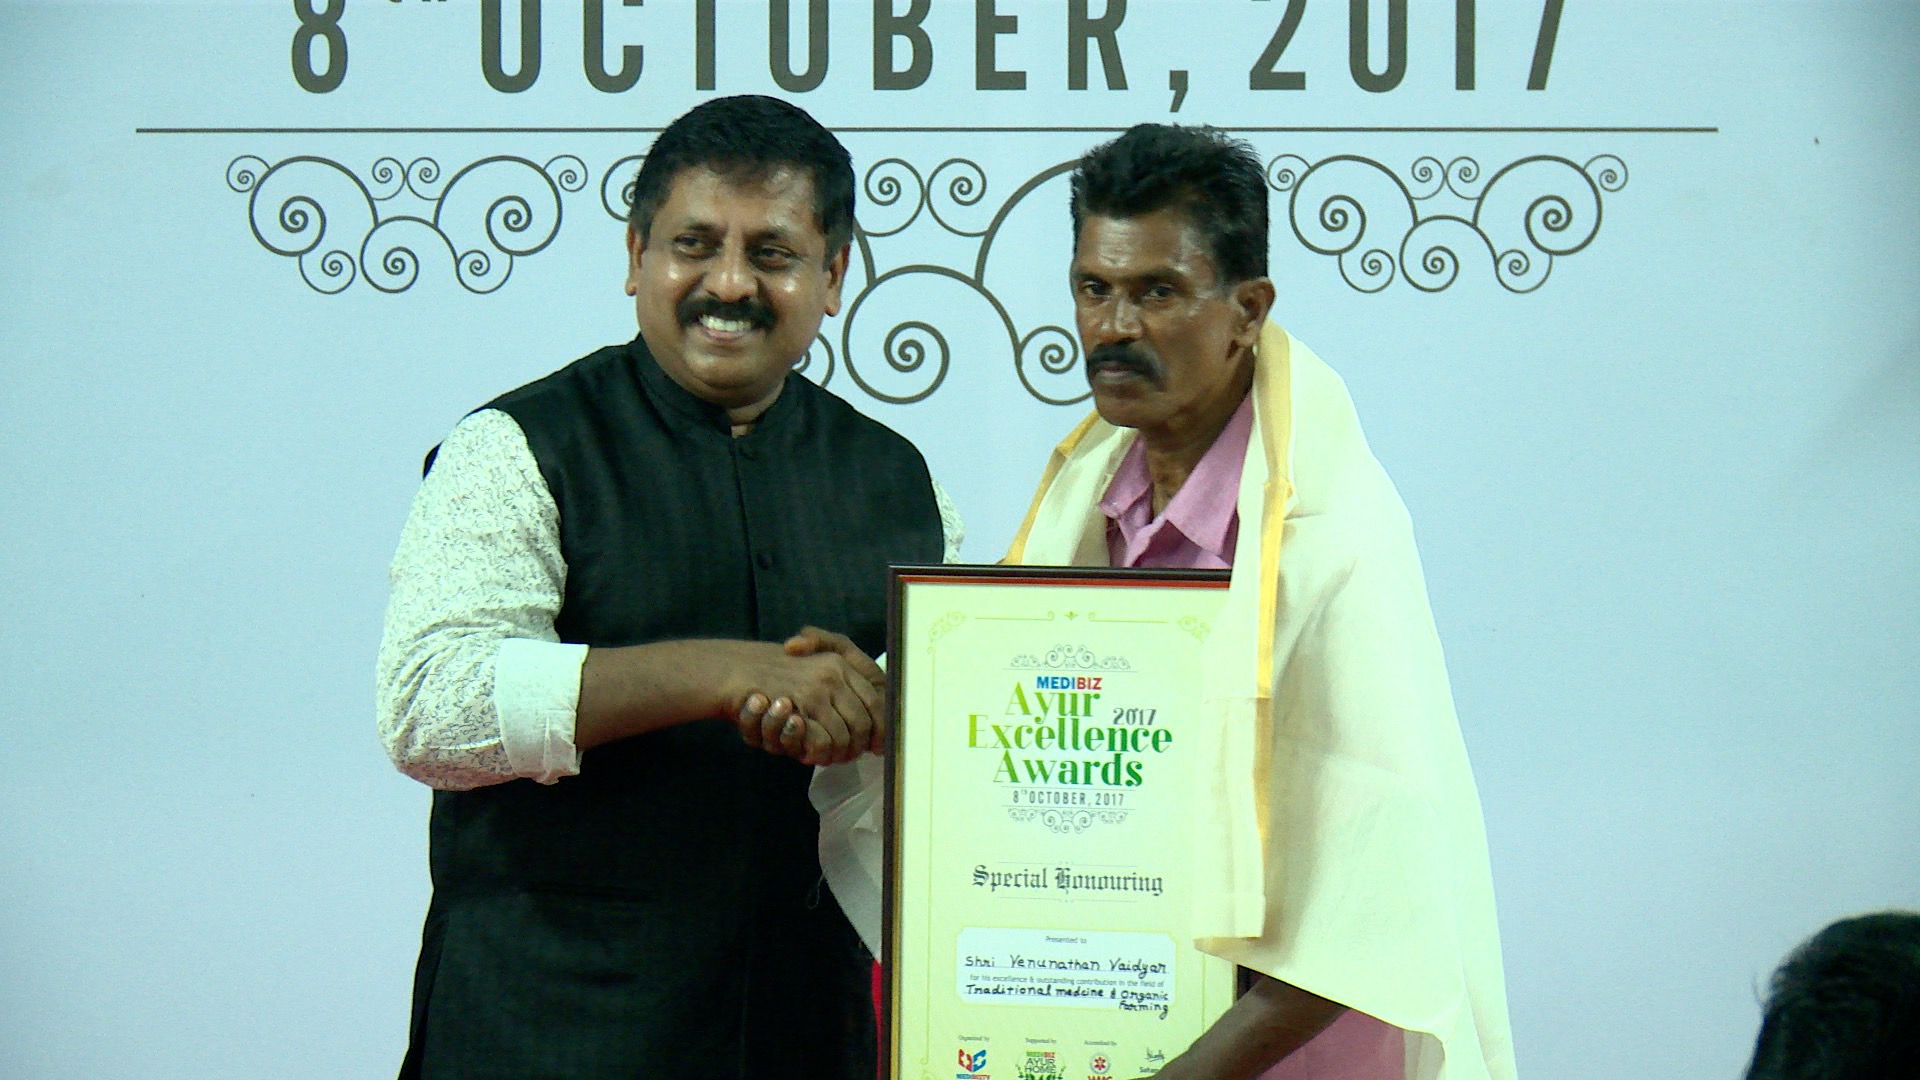 Medibiz Ayur Excellence Award - Special Honouring - Traditional Vaidyans - VenuNathan Vaidyar